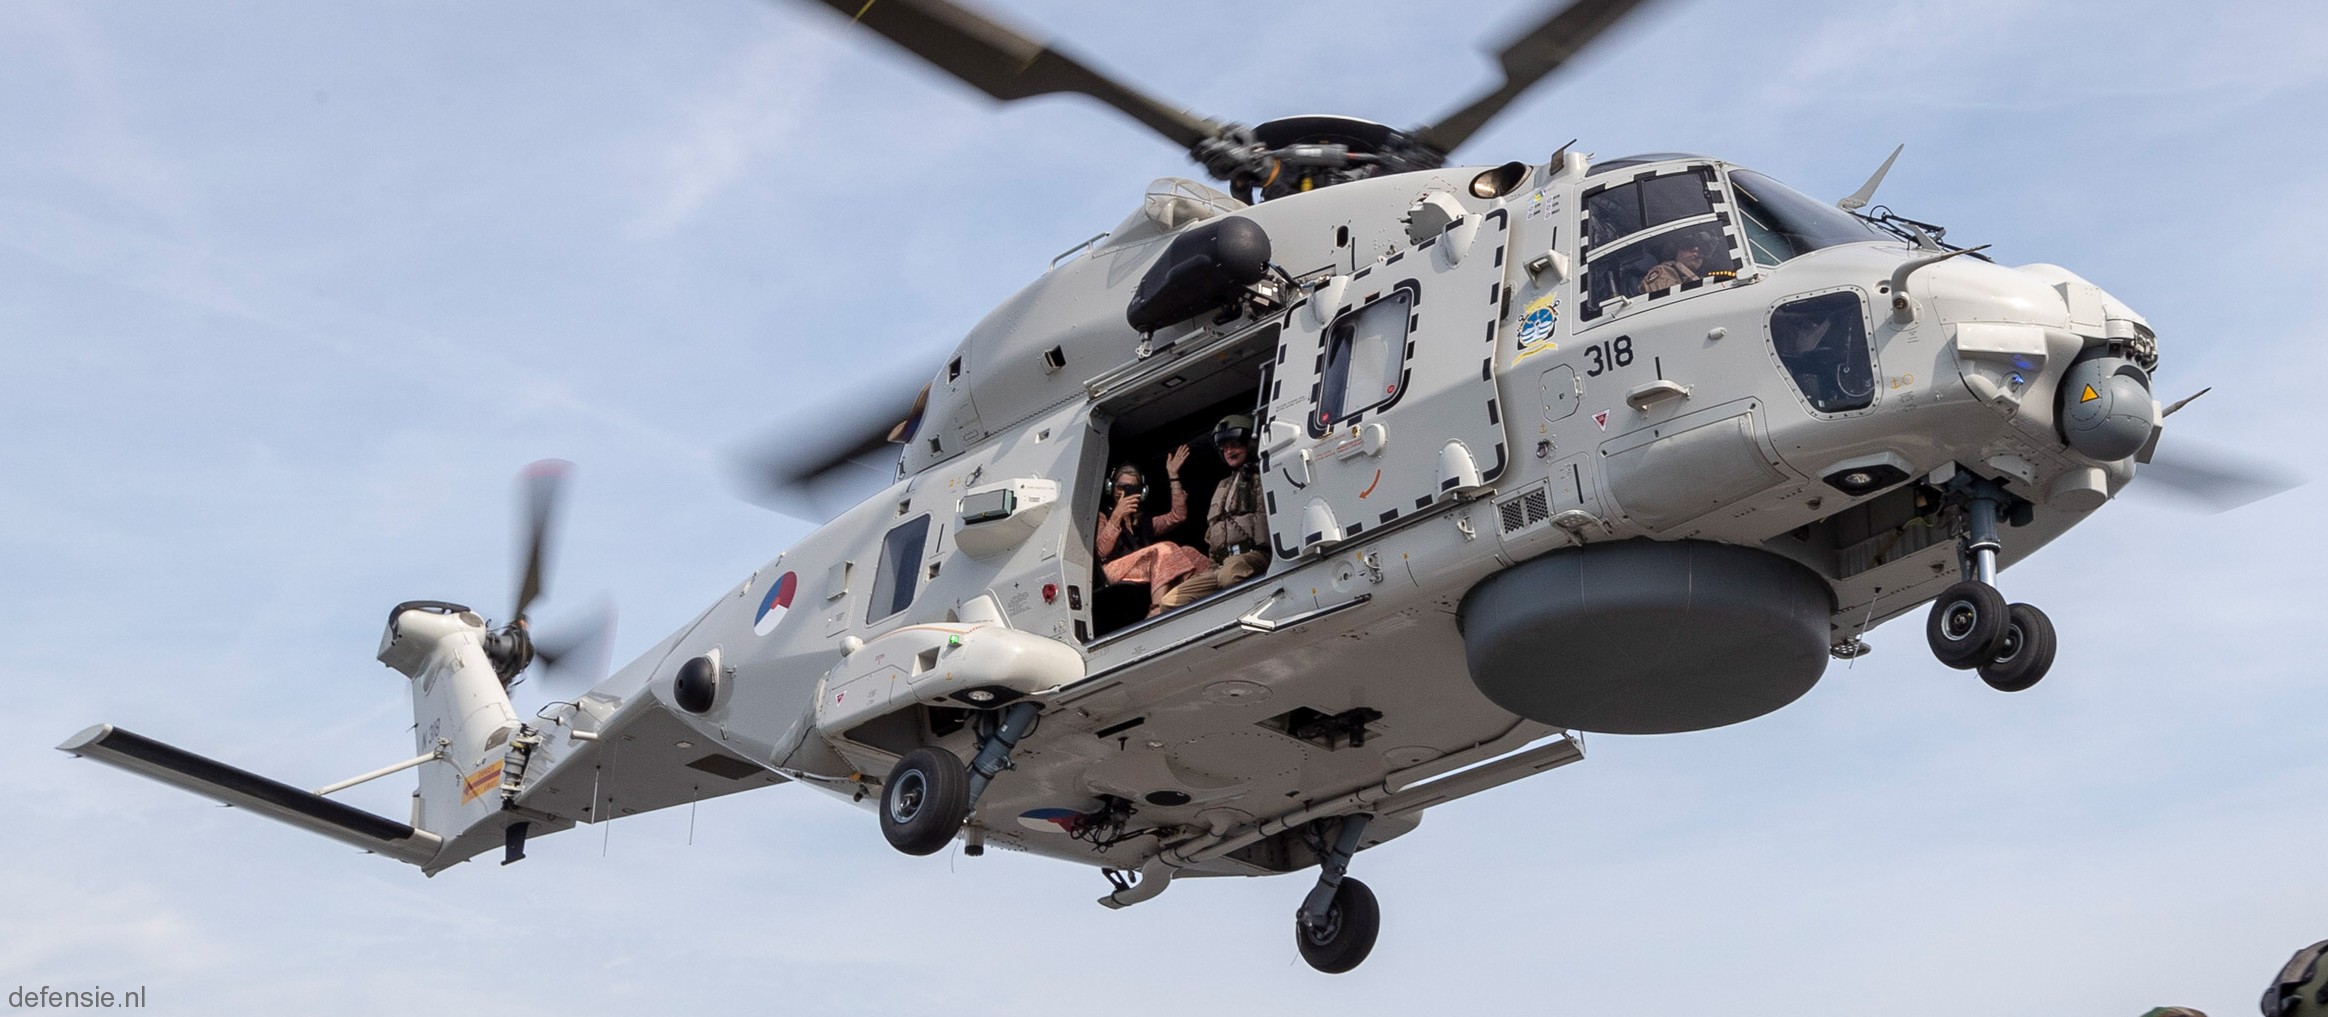 nh90 nfh helicopter royal netherlands navy koninklijke marine n-318 04